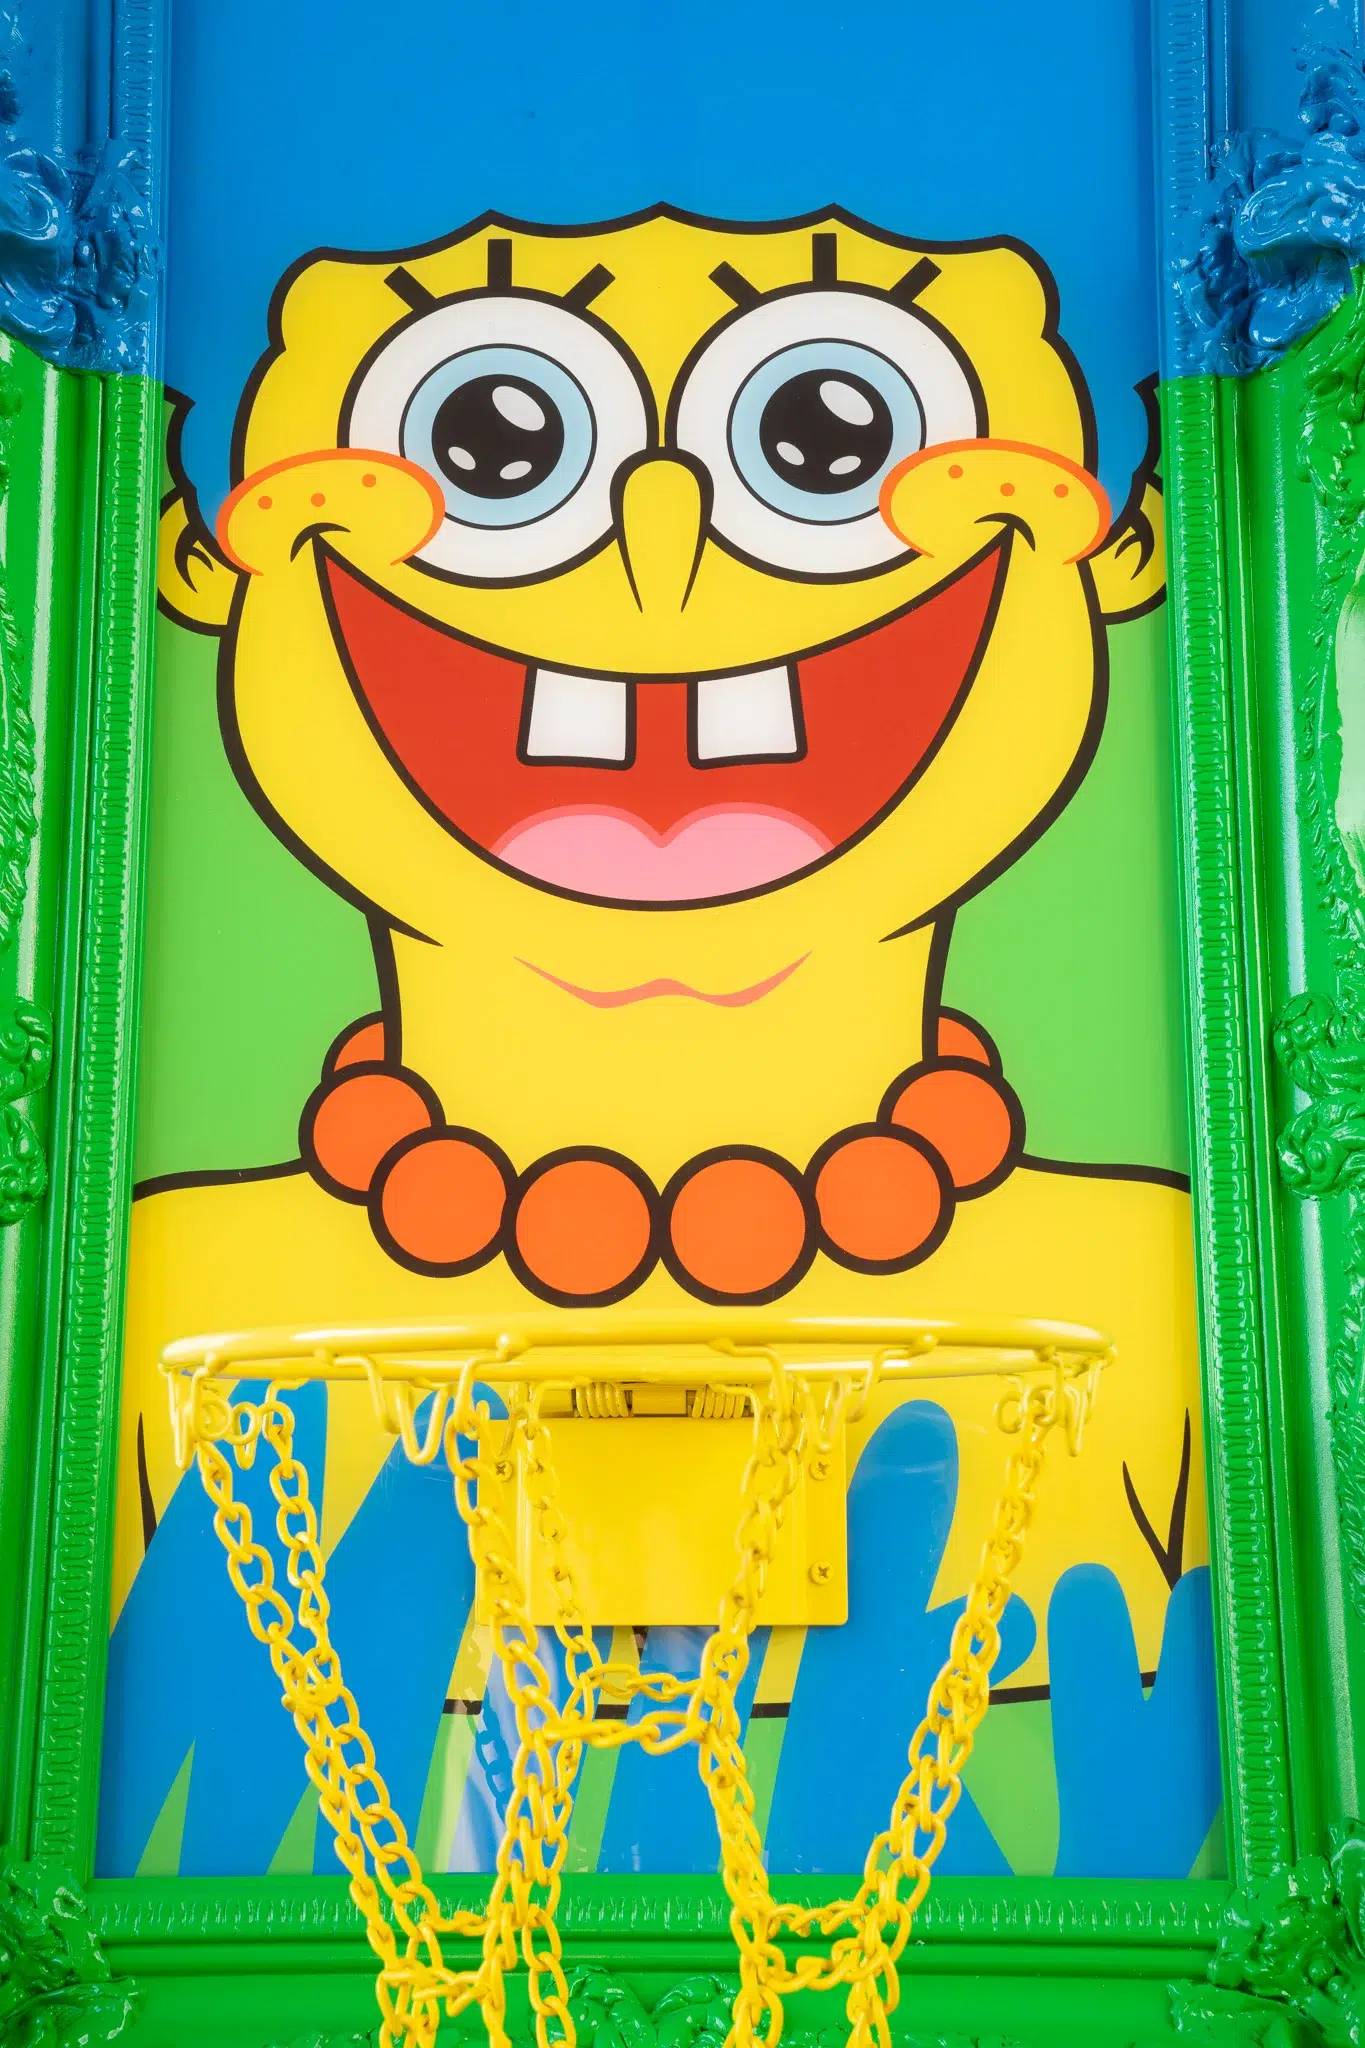 Milky Hoop Spongebob squarepants basketball hoop designed by HDS and Aaron Craig.